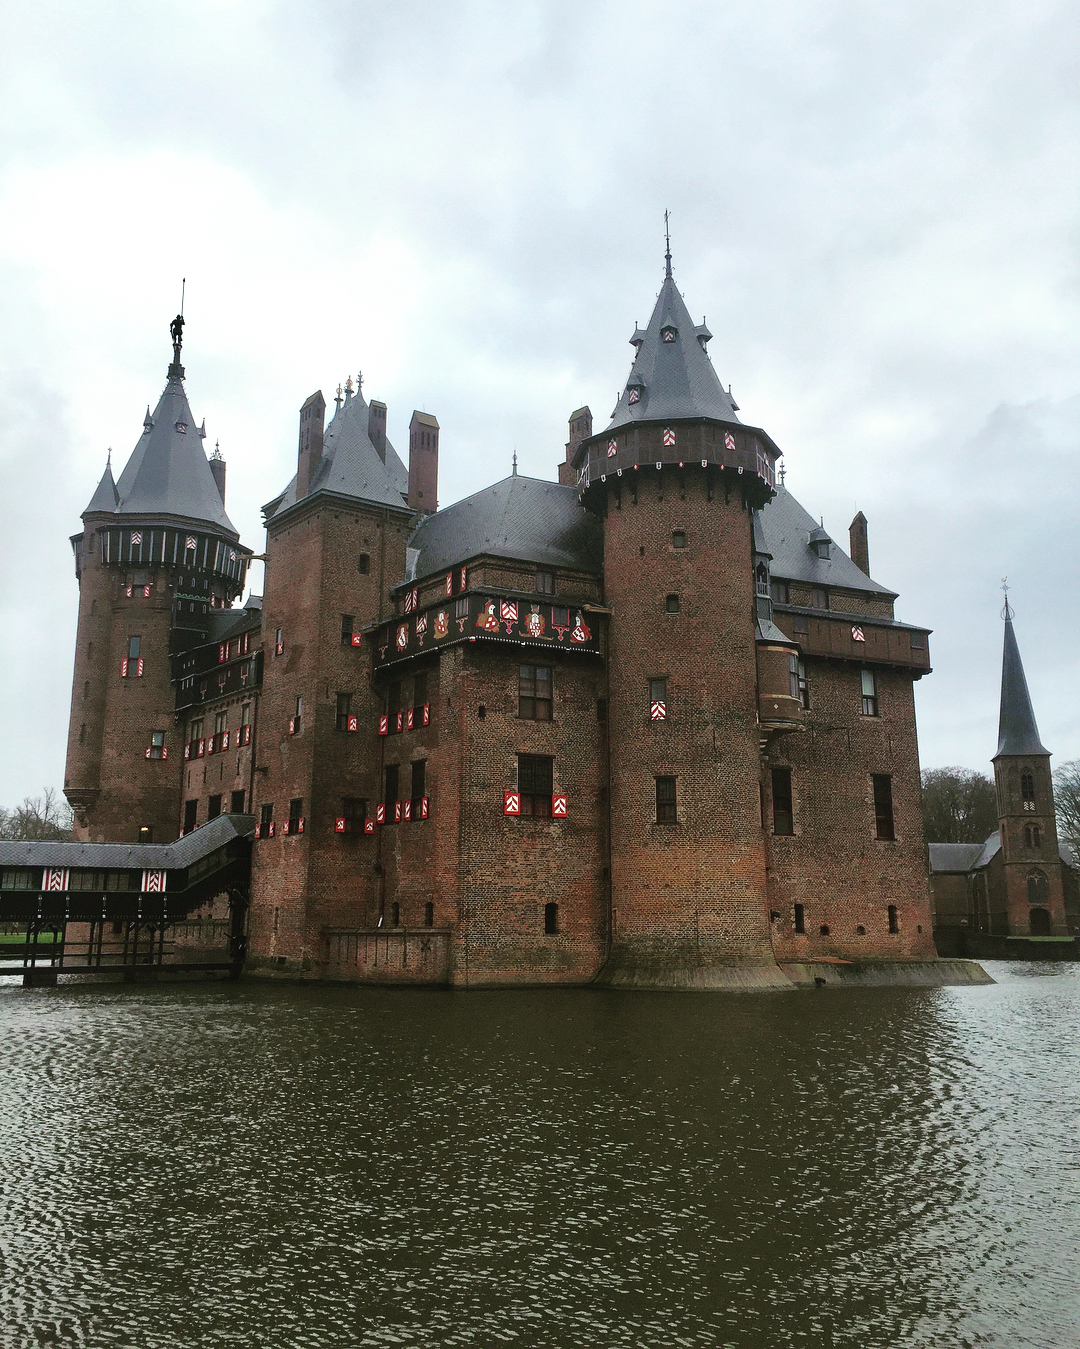 The De Haar Castle